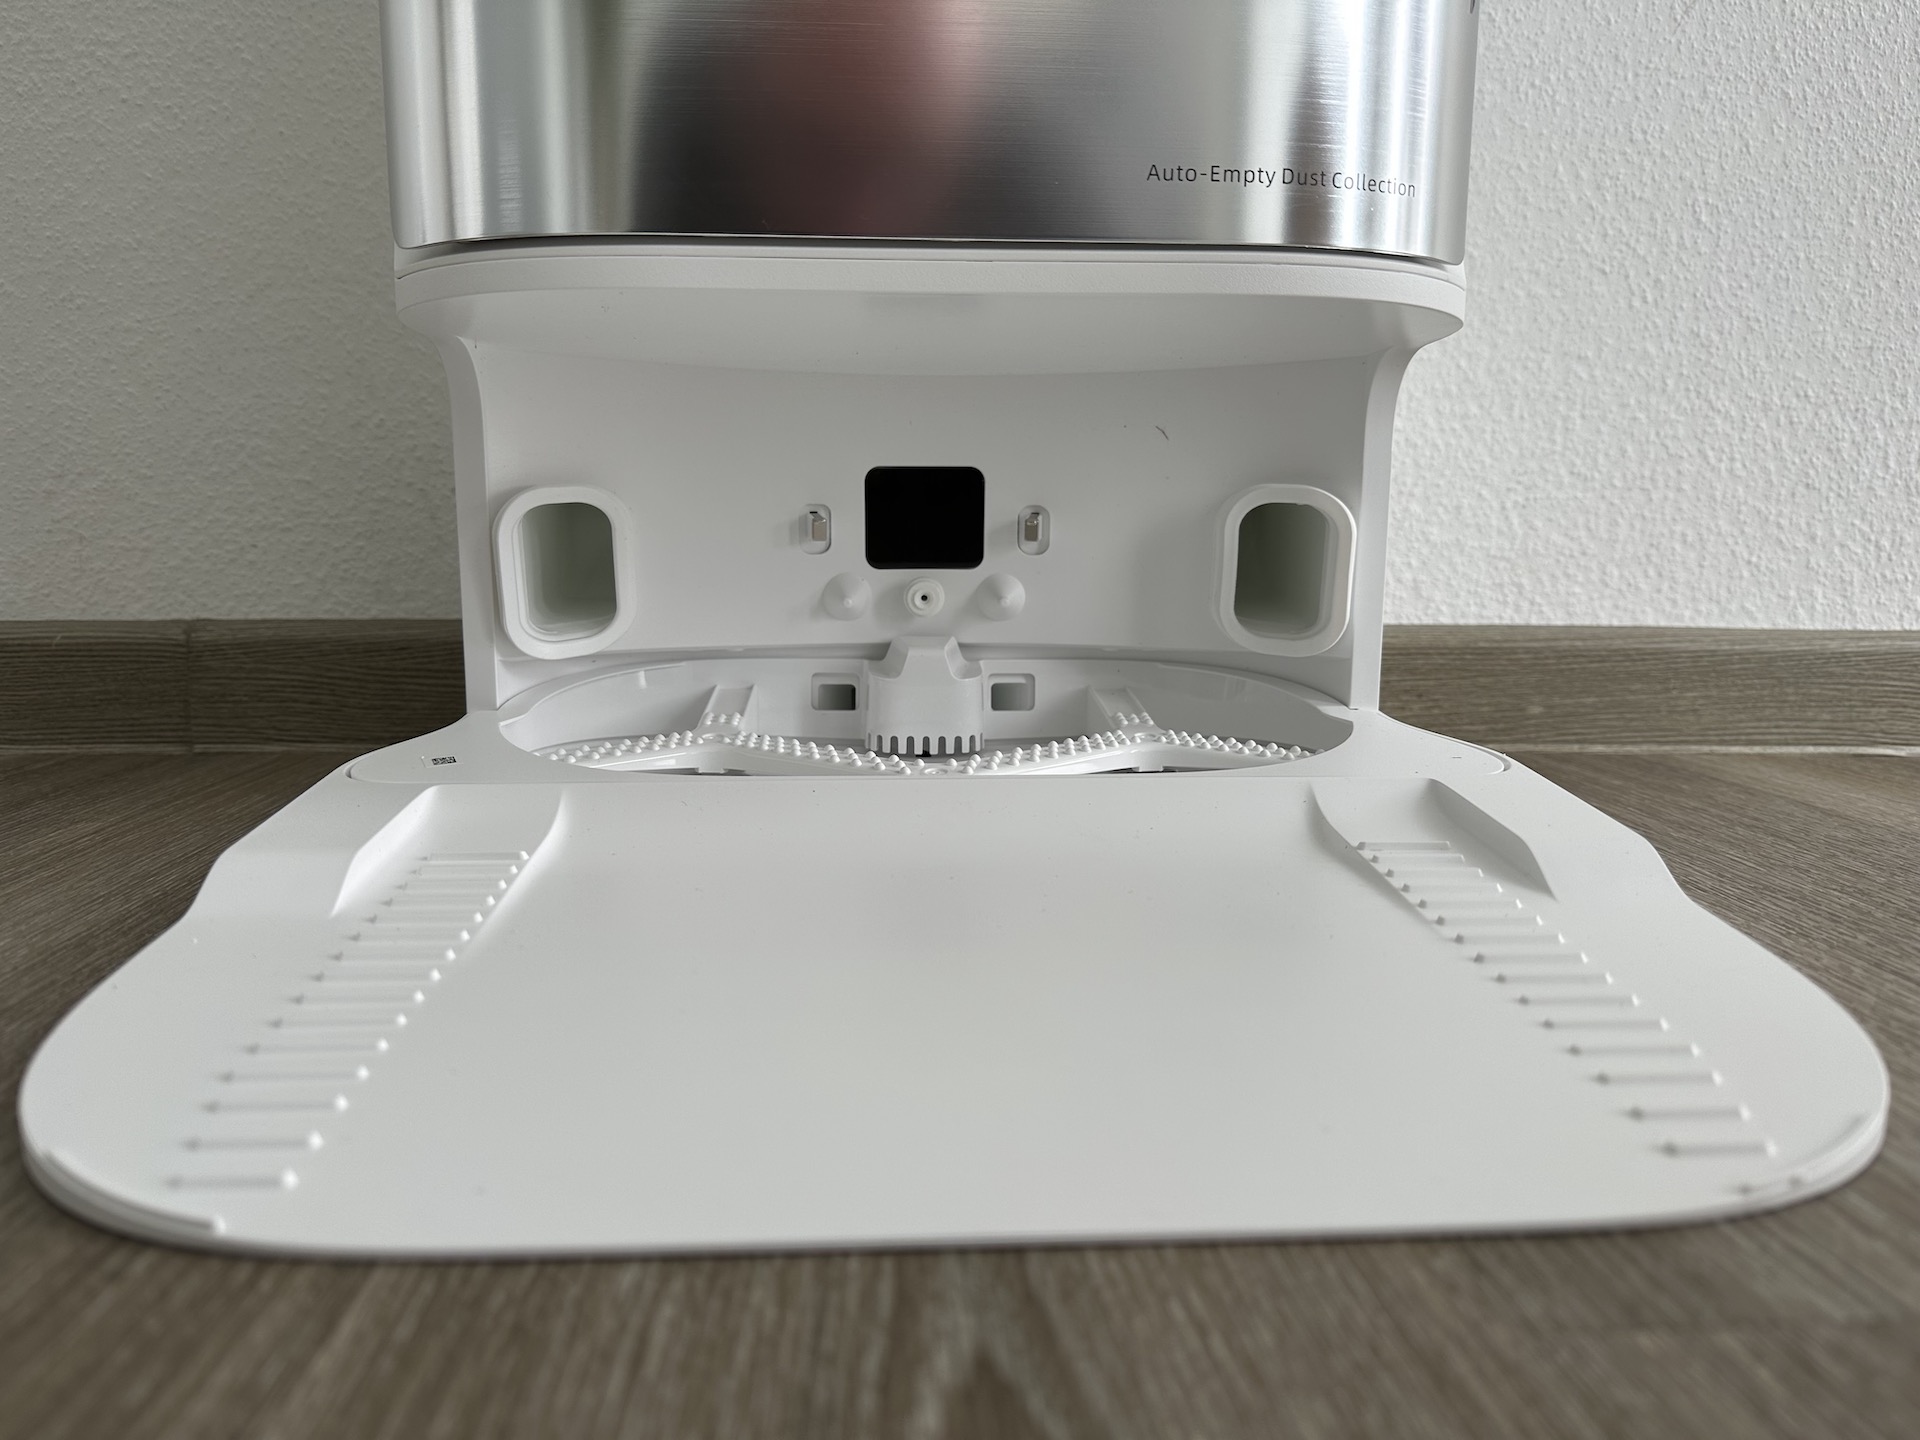 DreameBot L10s Ultra: Ein Versprechen für sorglose Reinigung [Test